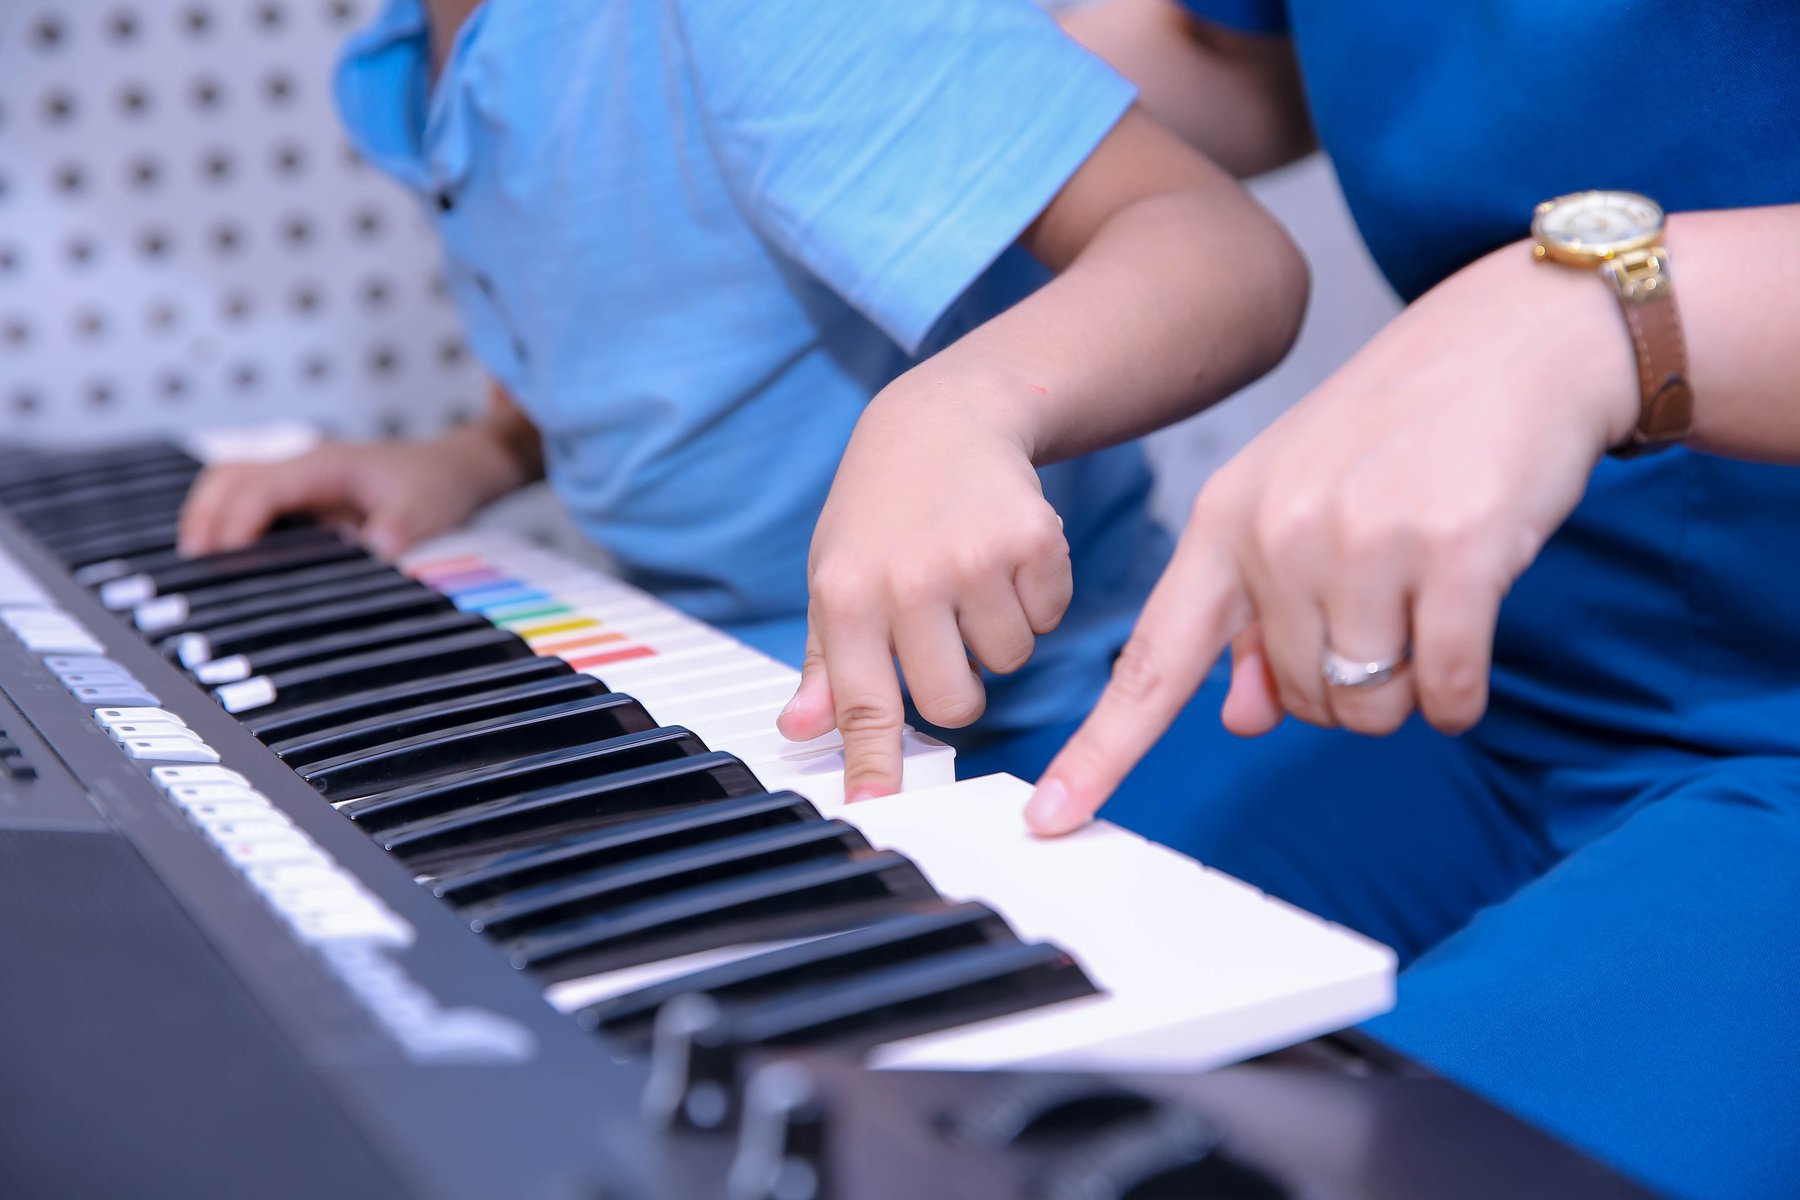 Giới thiệu và hướng dẫn một số dụng cụ để vận động theo nhạc cho trẻ tự kỷ